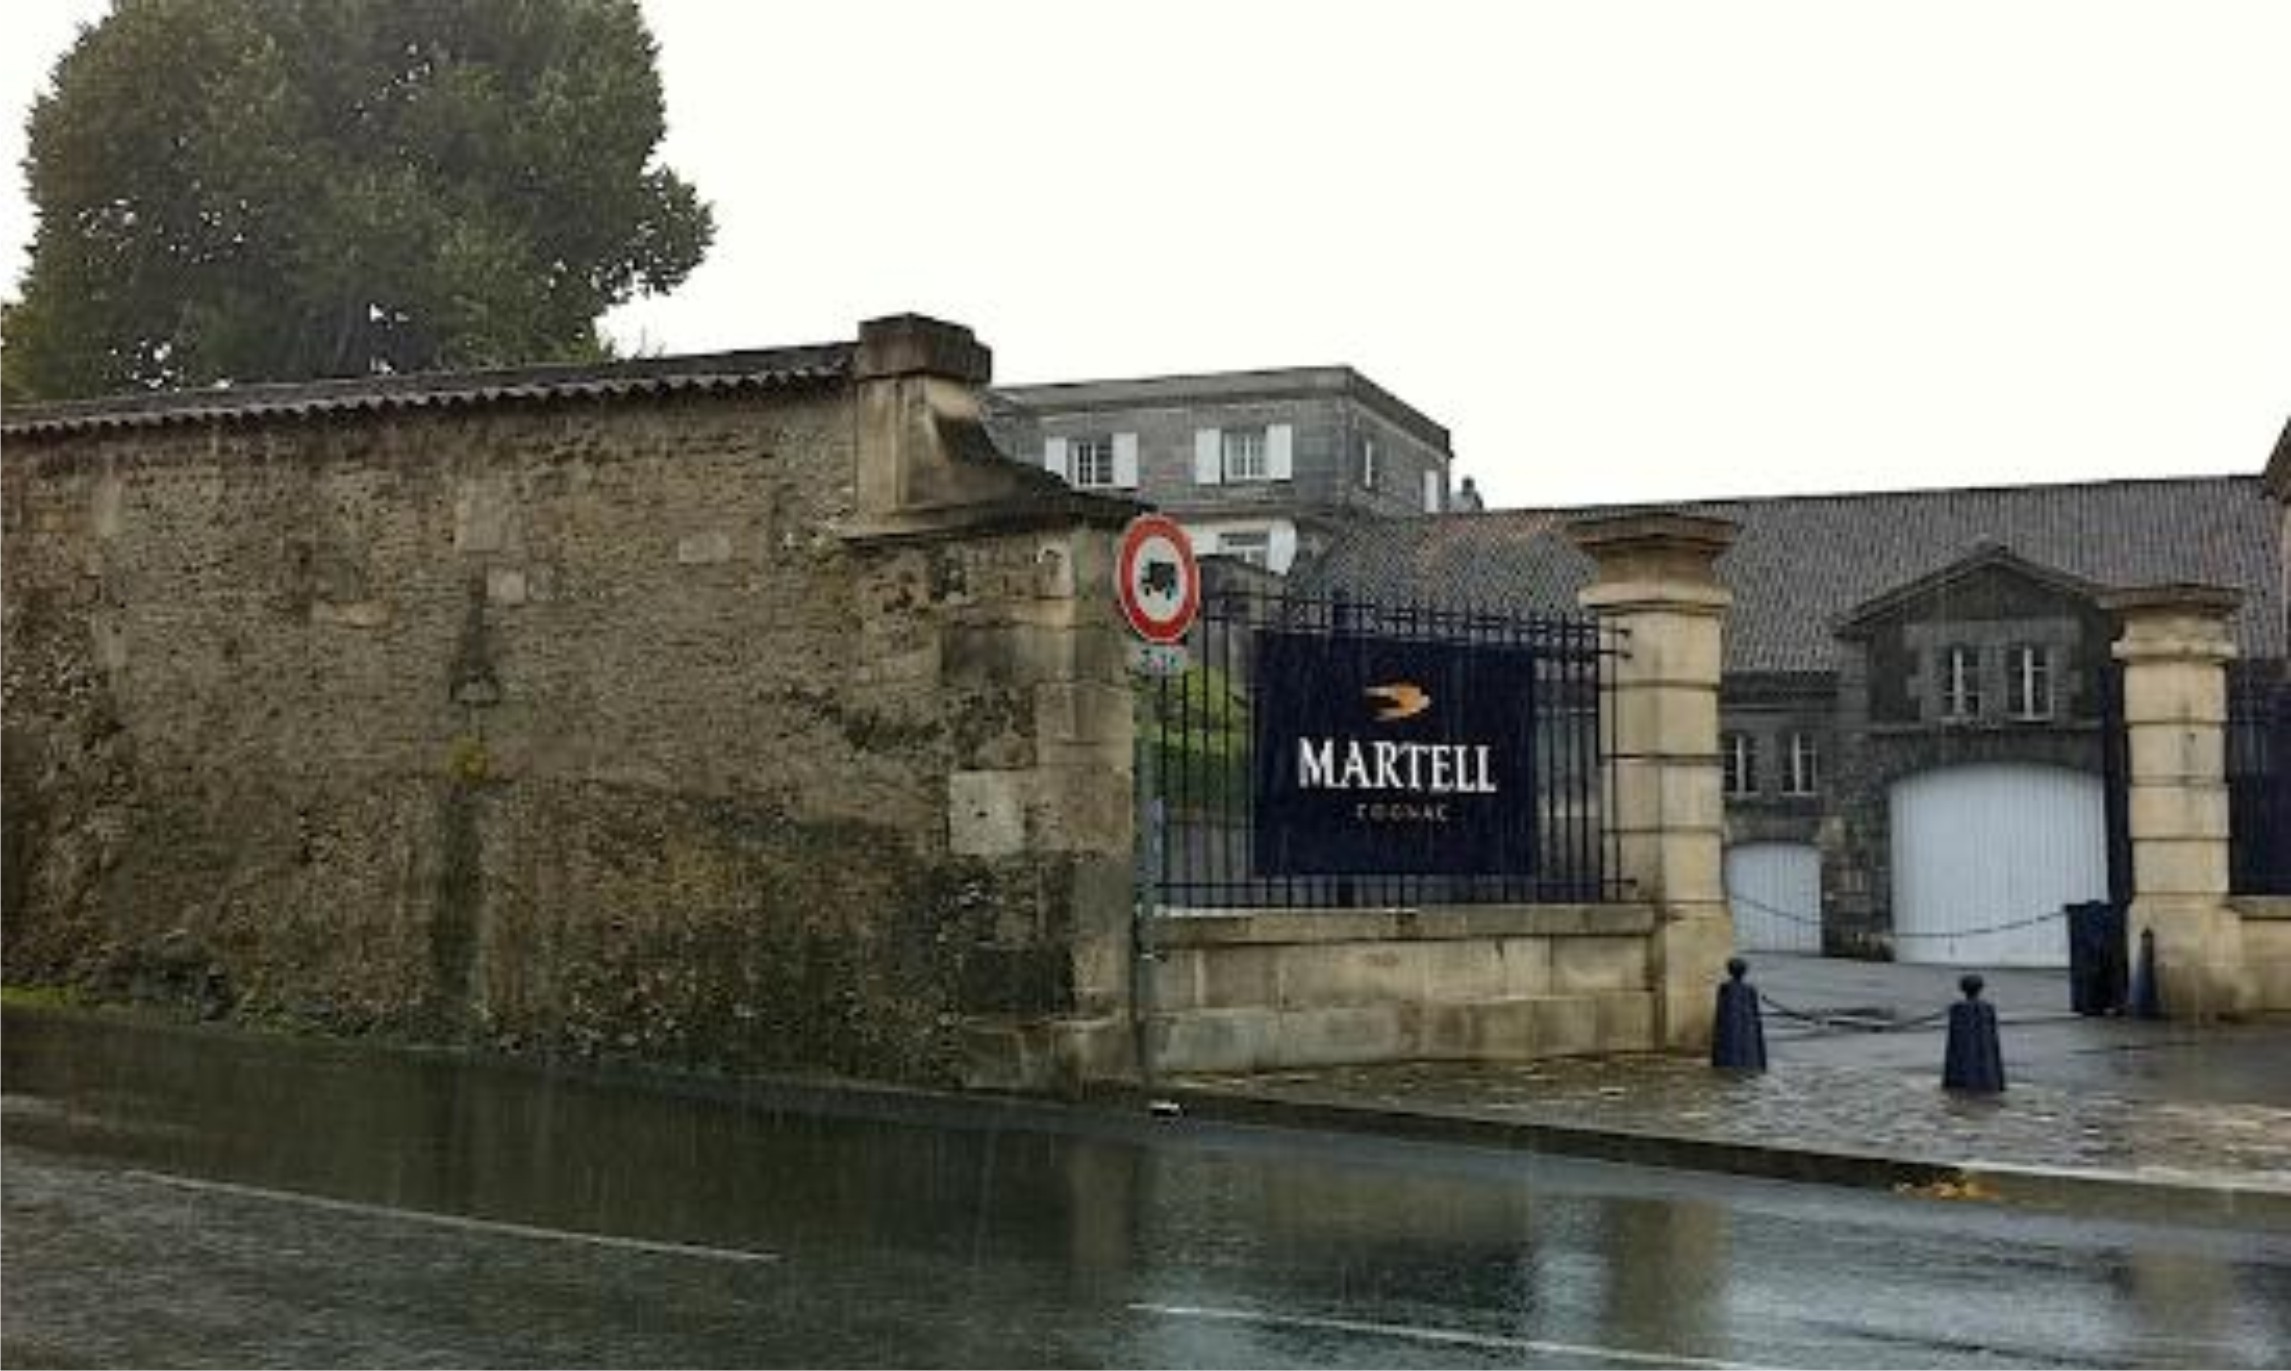 Distillery MARTELL